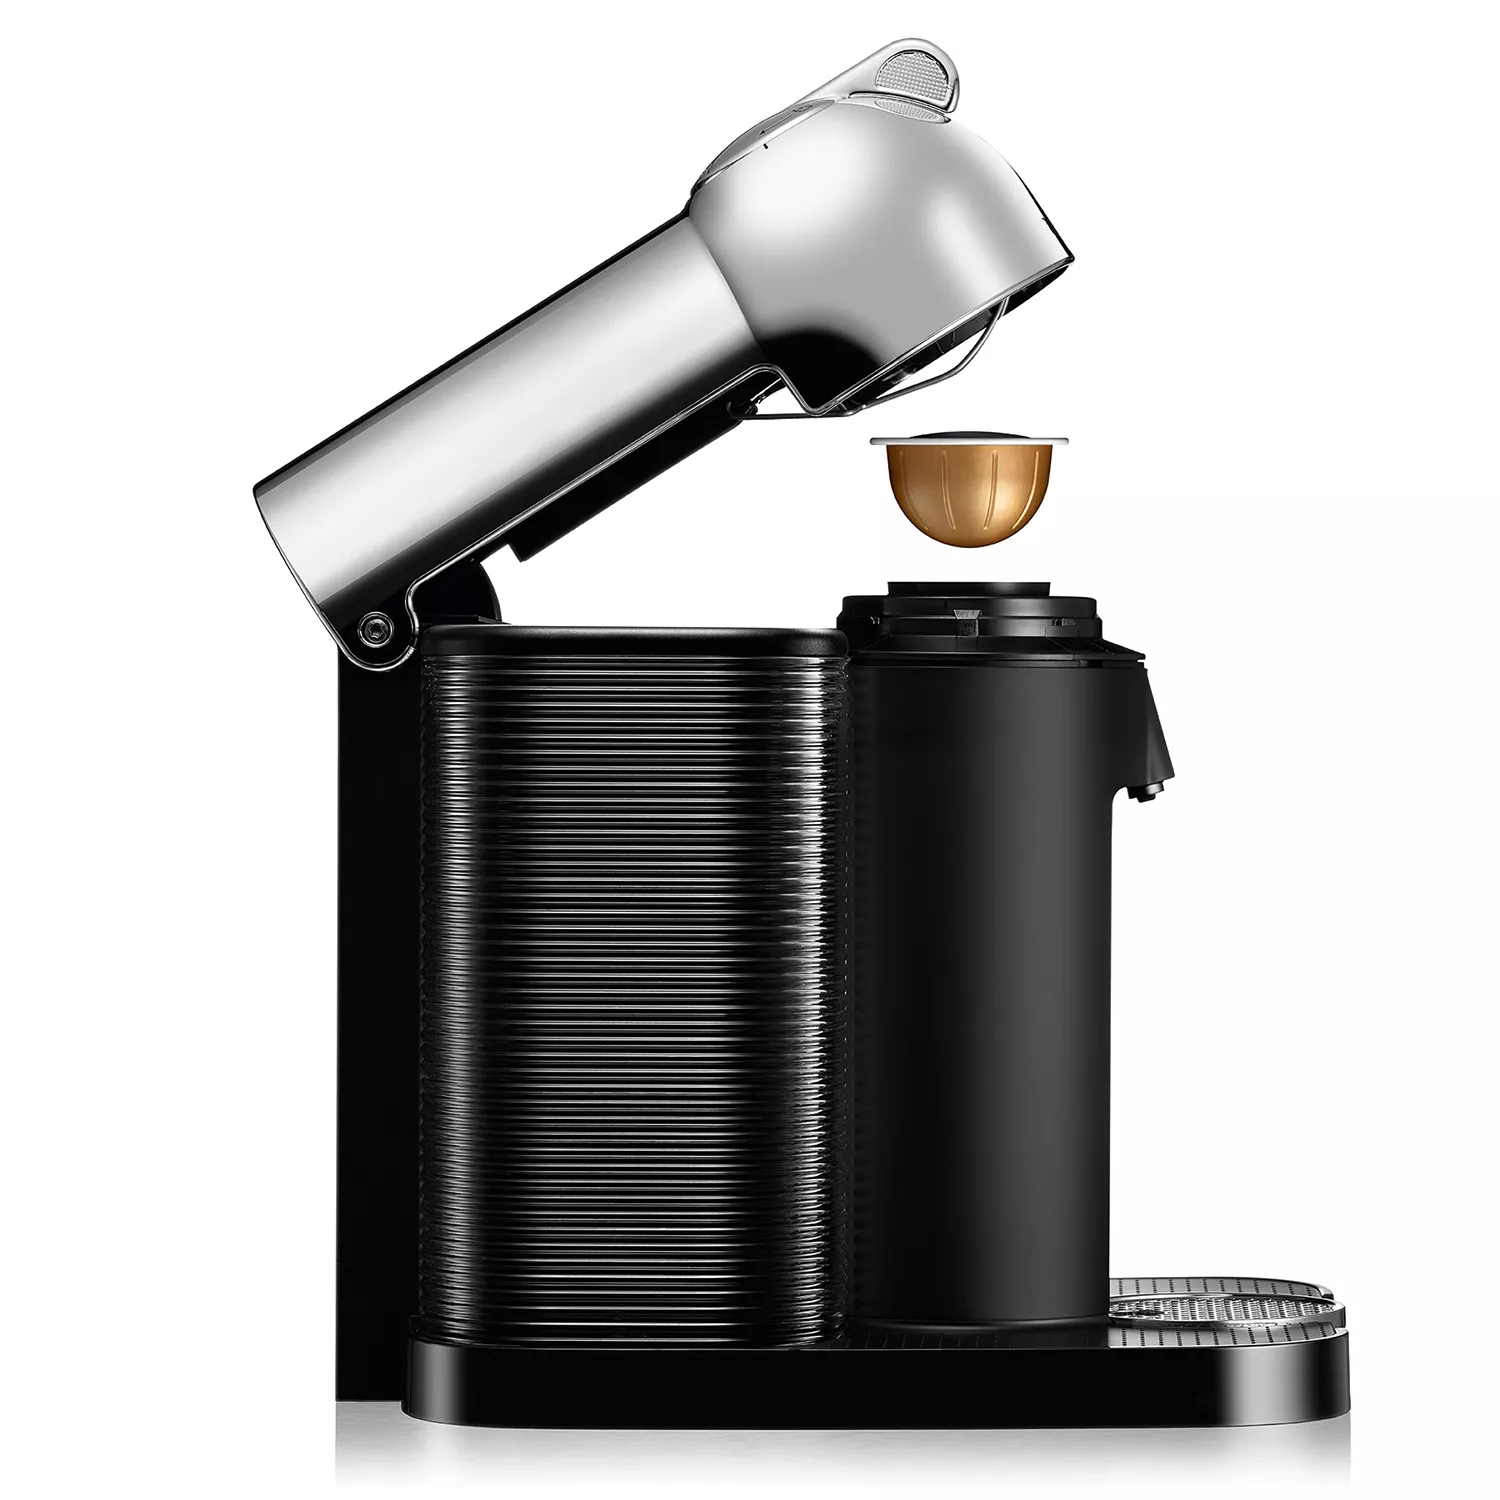 Nespresso Inissia Single Serve Espresso Machine And Aeroccino Milk Frother, Coffee, Tea & Espresso, Furniture & Appliances